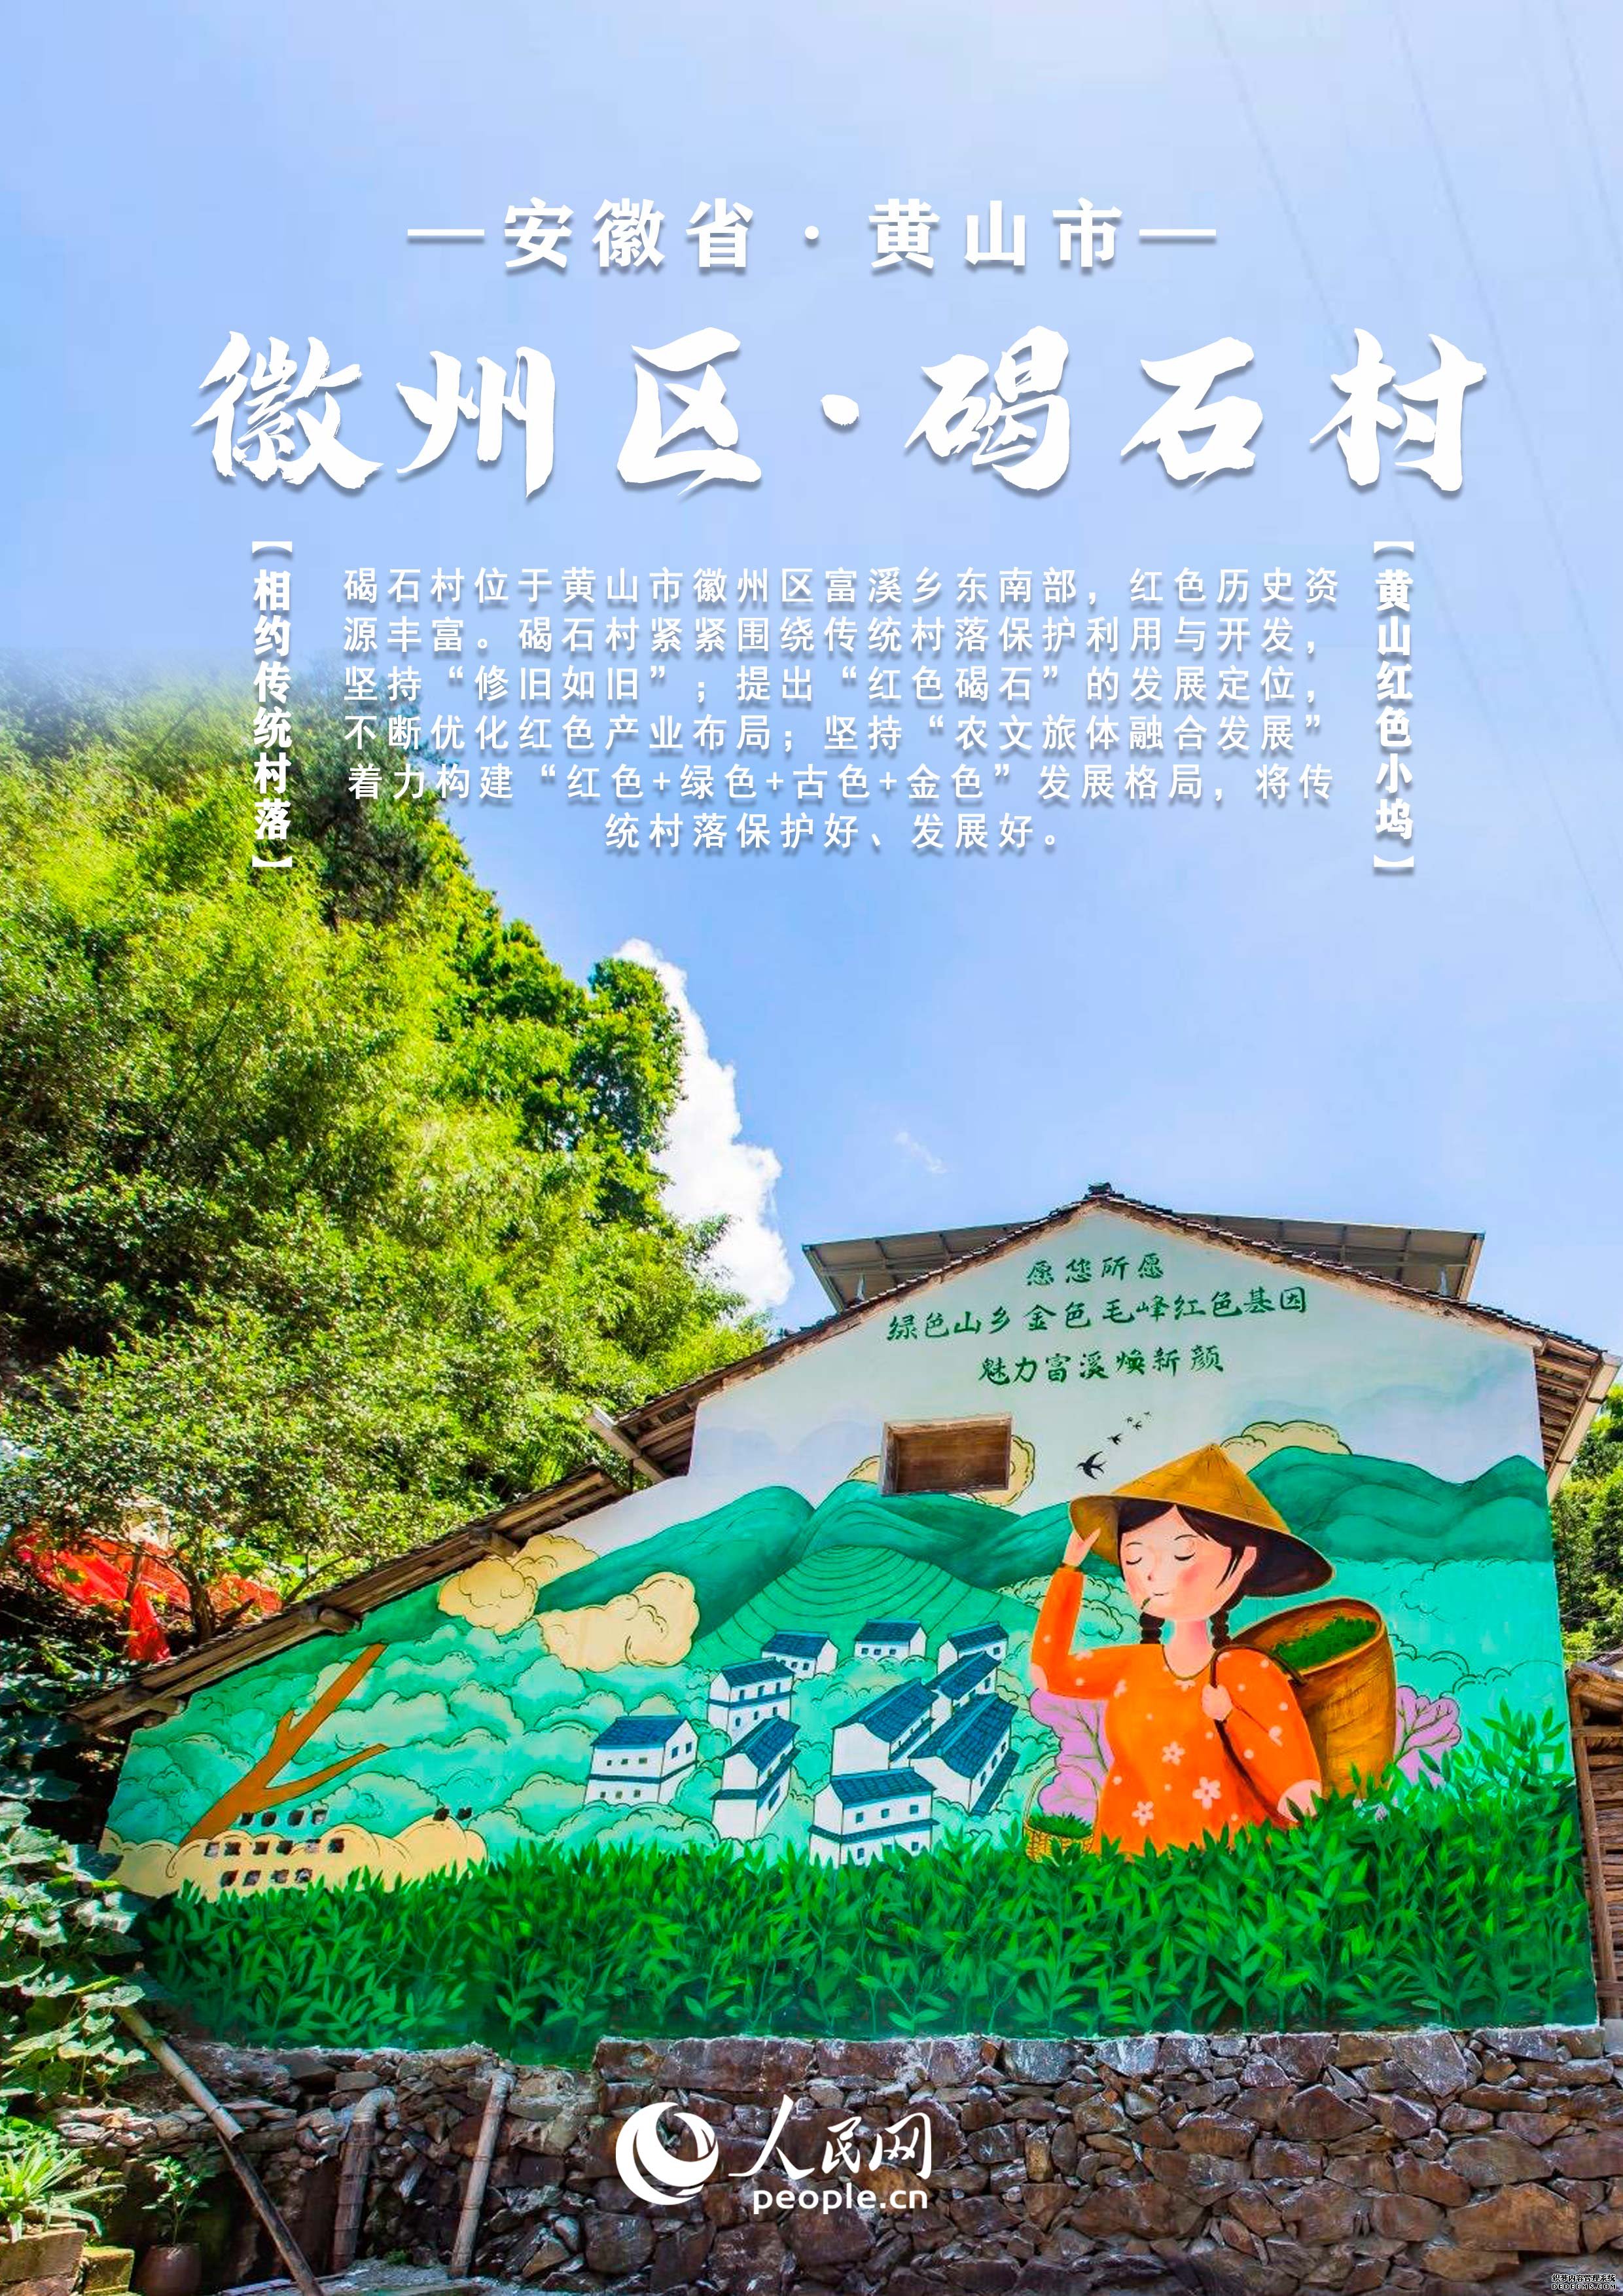 【发现最美你评我论】中国安徽传统村落大赏丨邀您共赏文旅画卷每张都值得收藏！